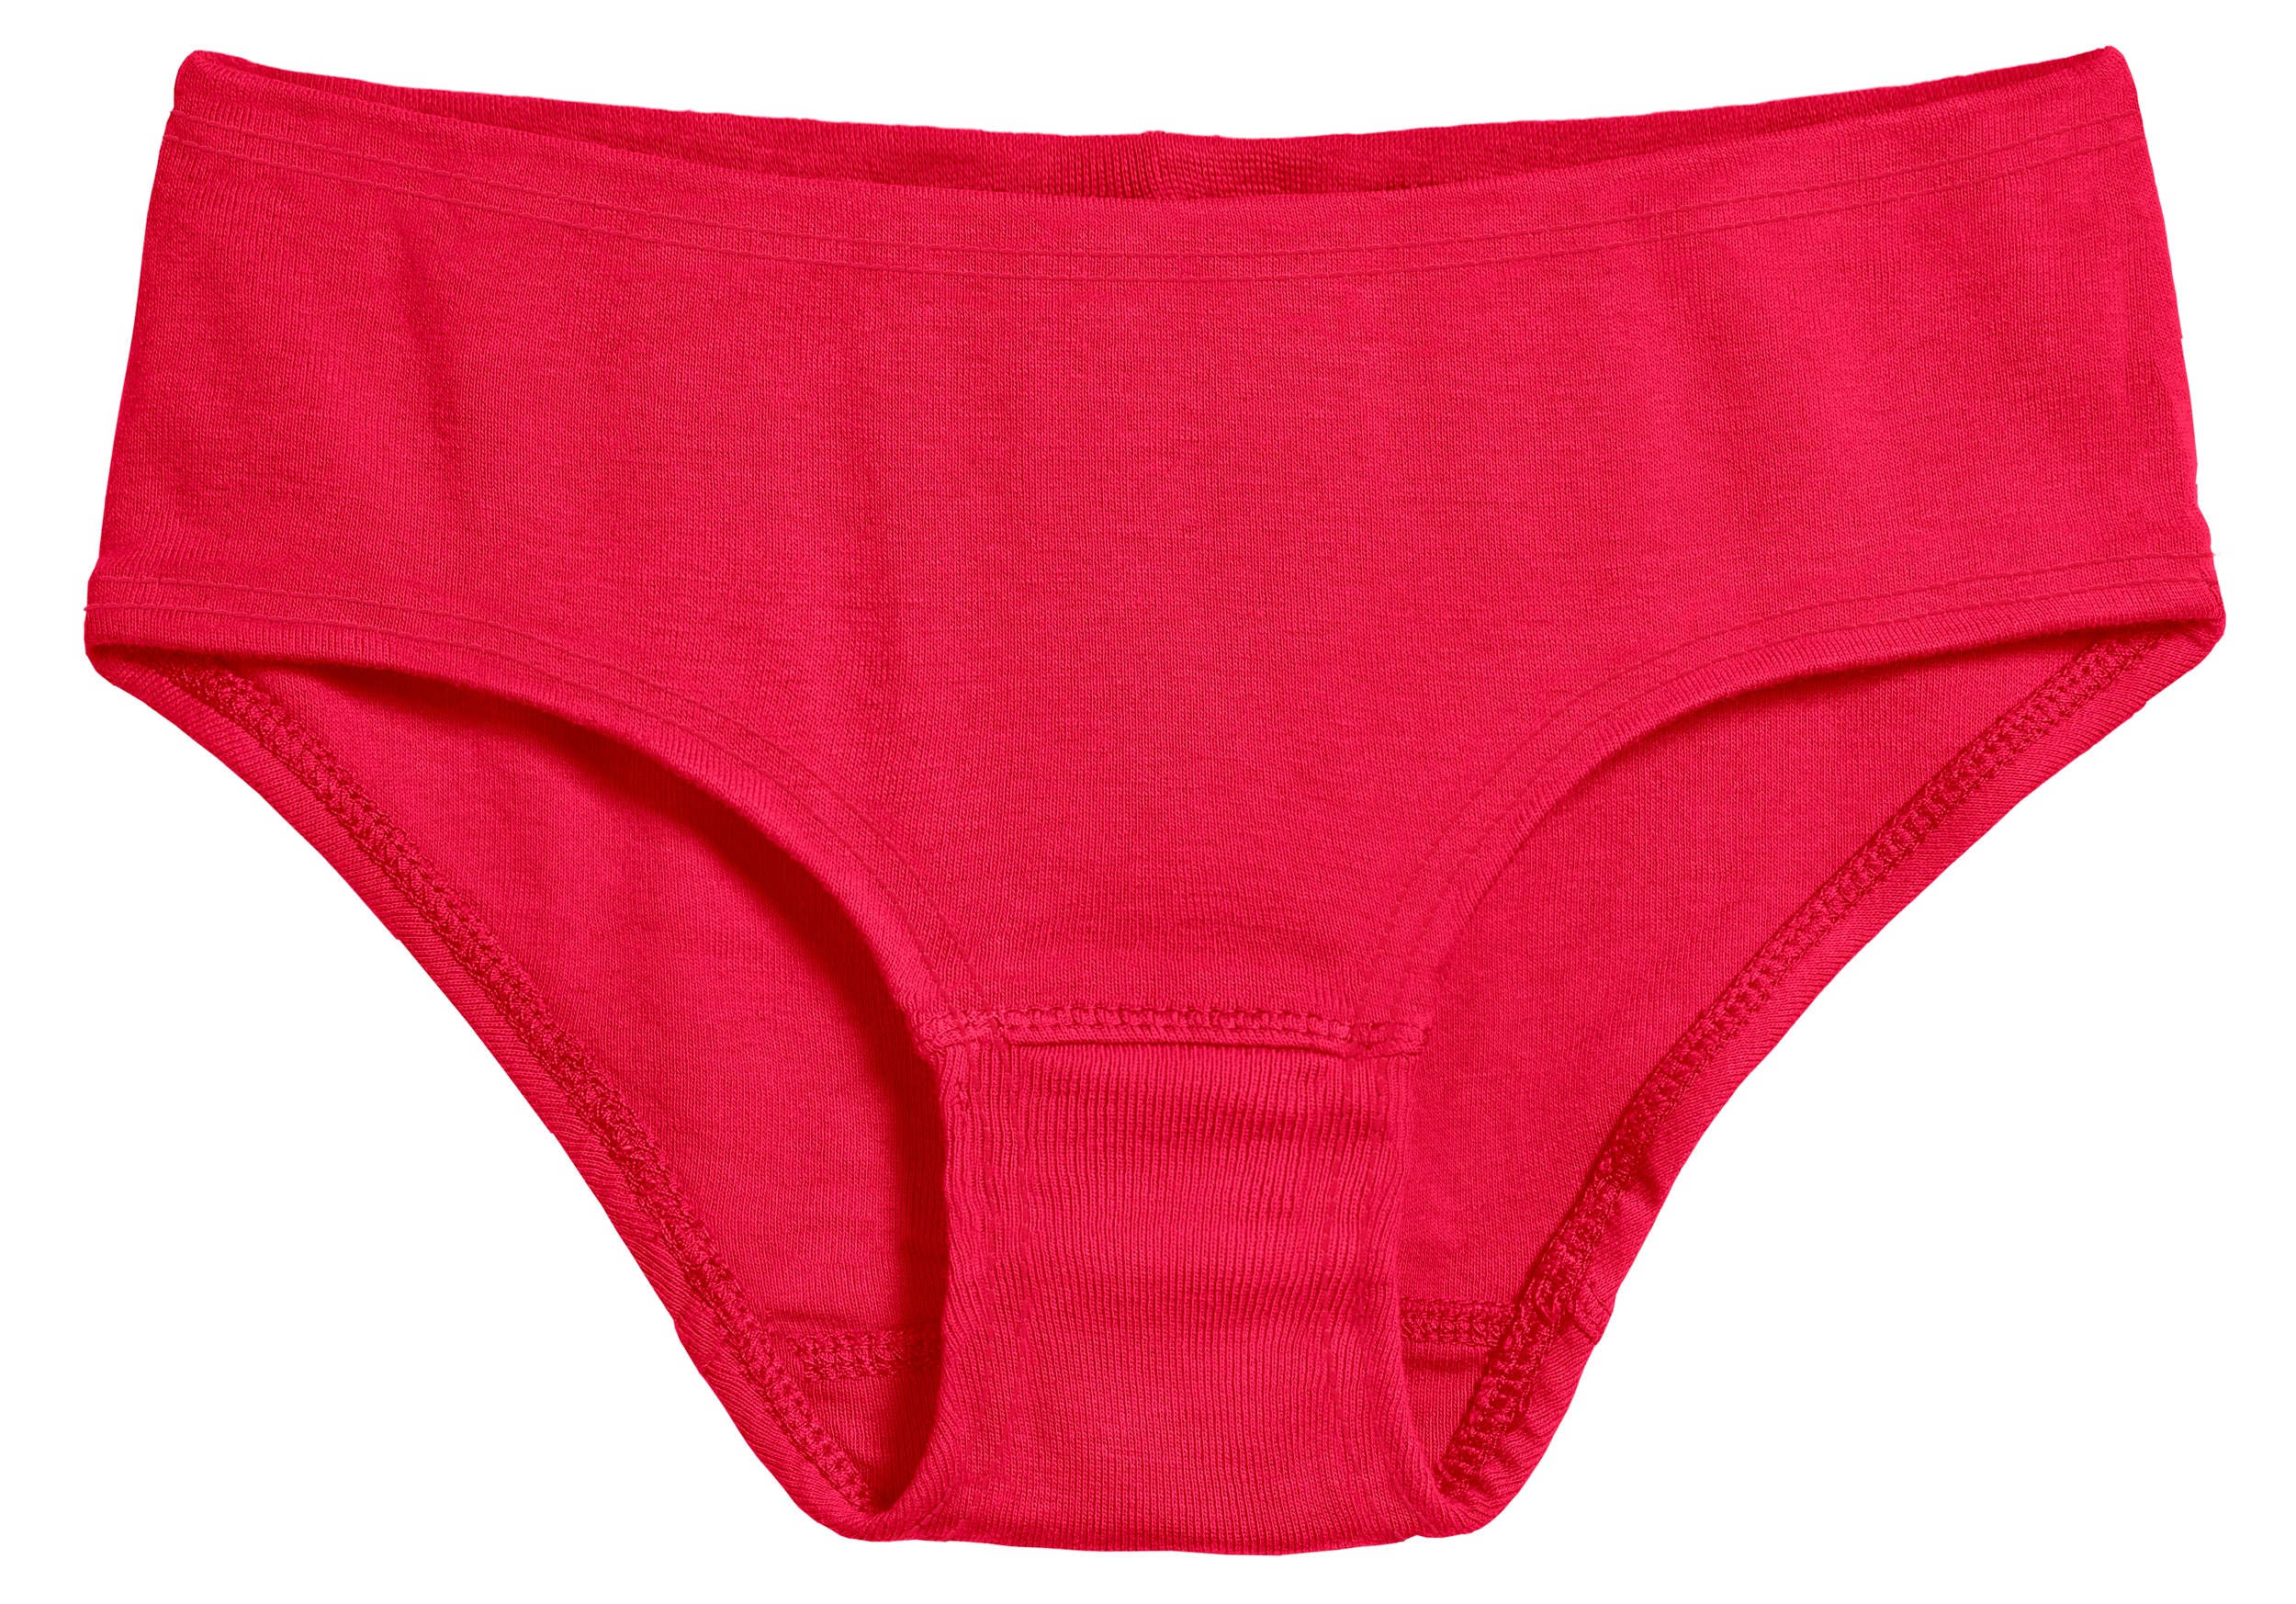 City Threads Girls' Briefs Underwear Panties in India